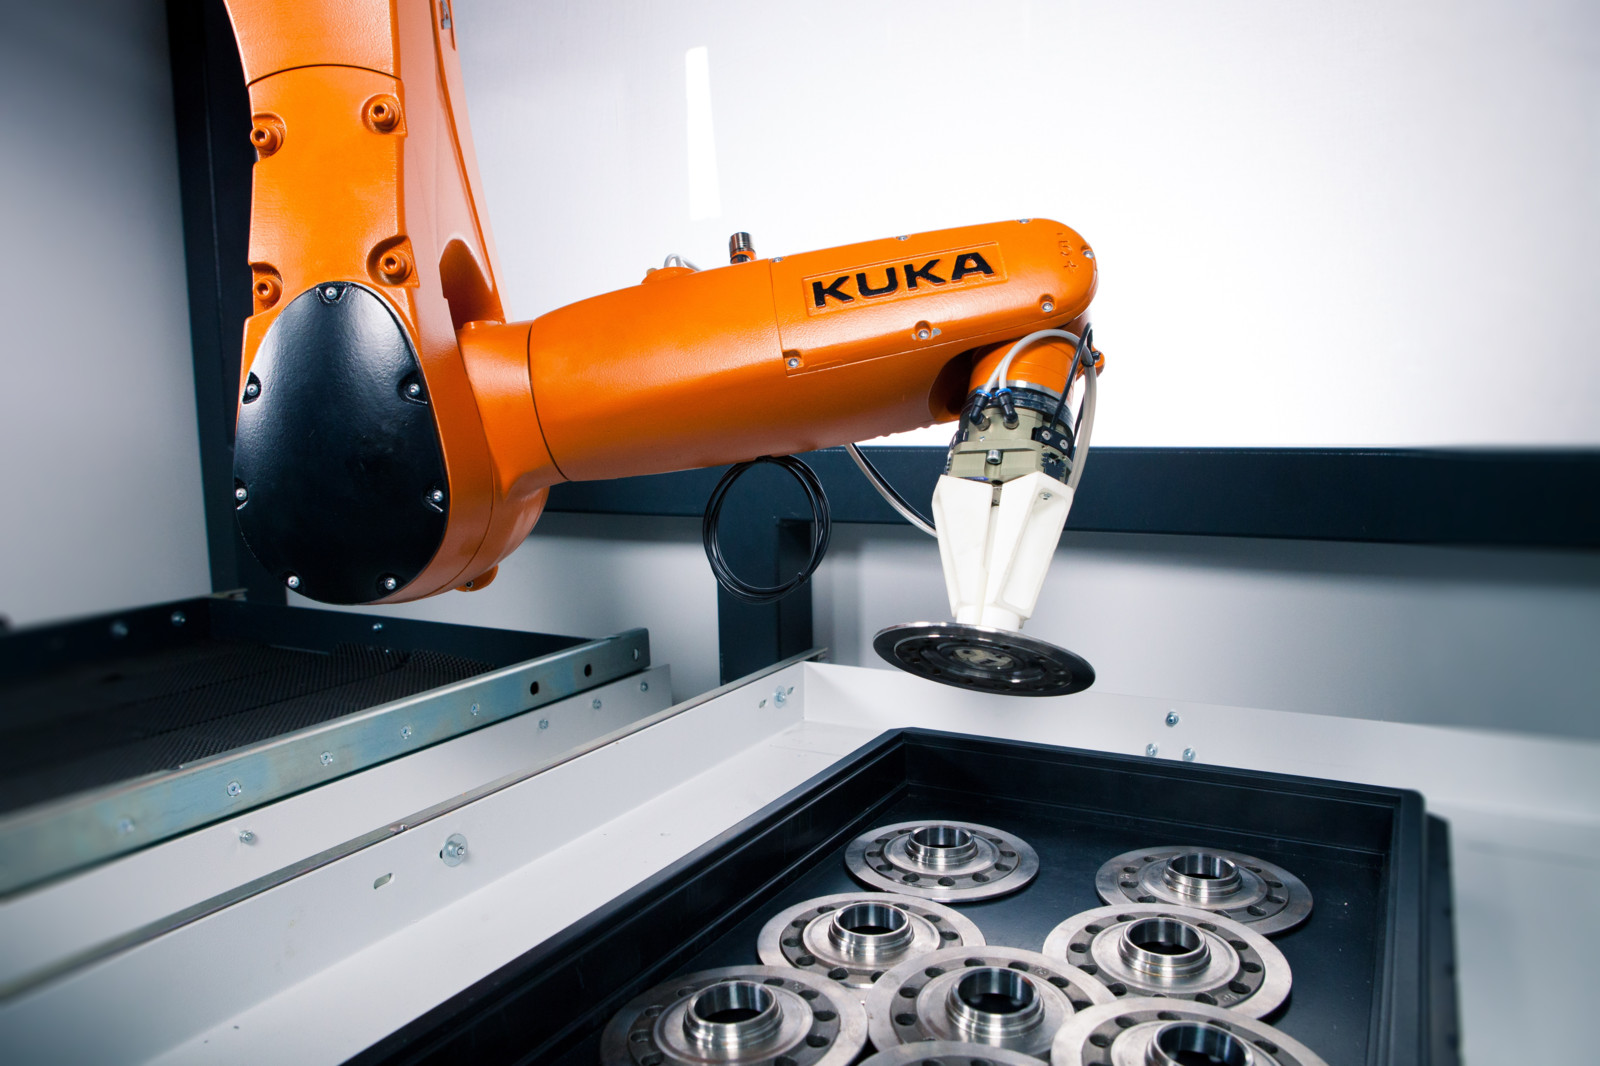 Das Zusammenspiel von Kuka-Roboter, KI-basierter Objekterkennung und kollisionsfreier Bahnplanung können monotone Entnahmeprozesse automatisiert werden.